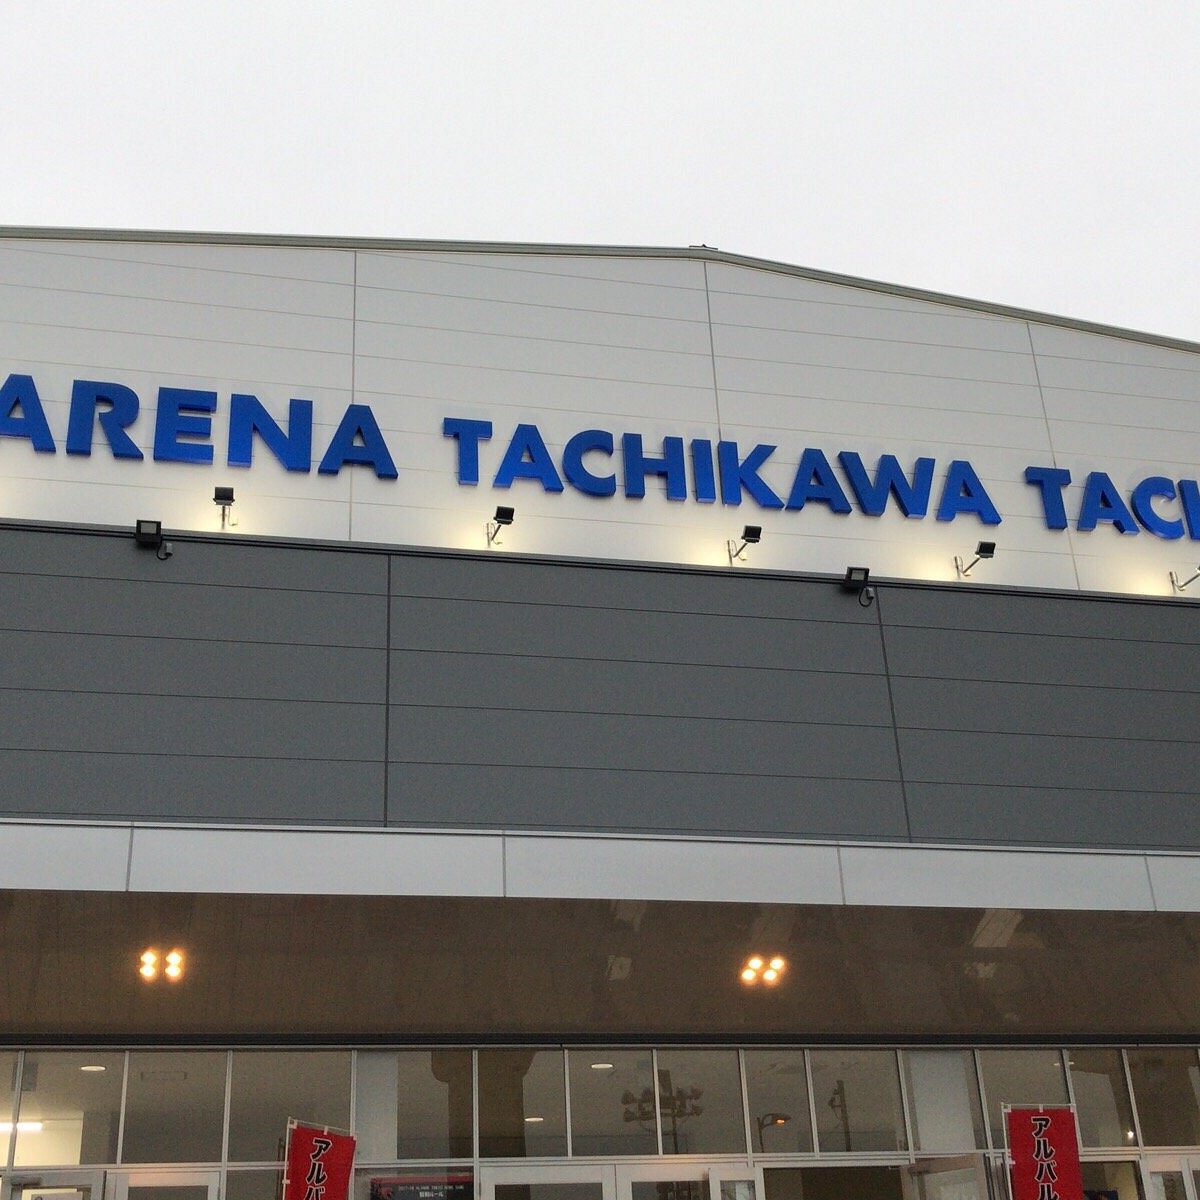 Arena Tachikawa Tachihi  Sport and fitness in Tachikawa, Tokyo